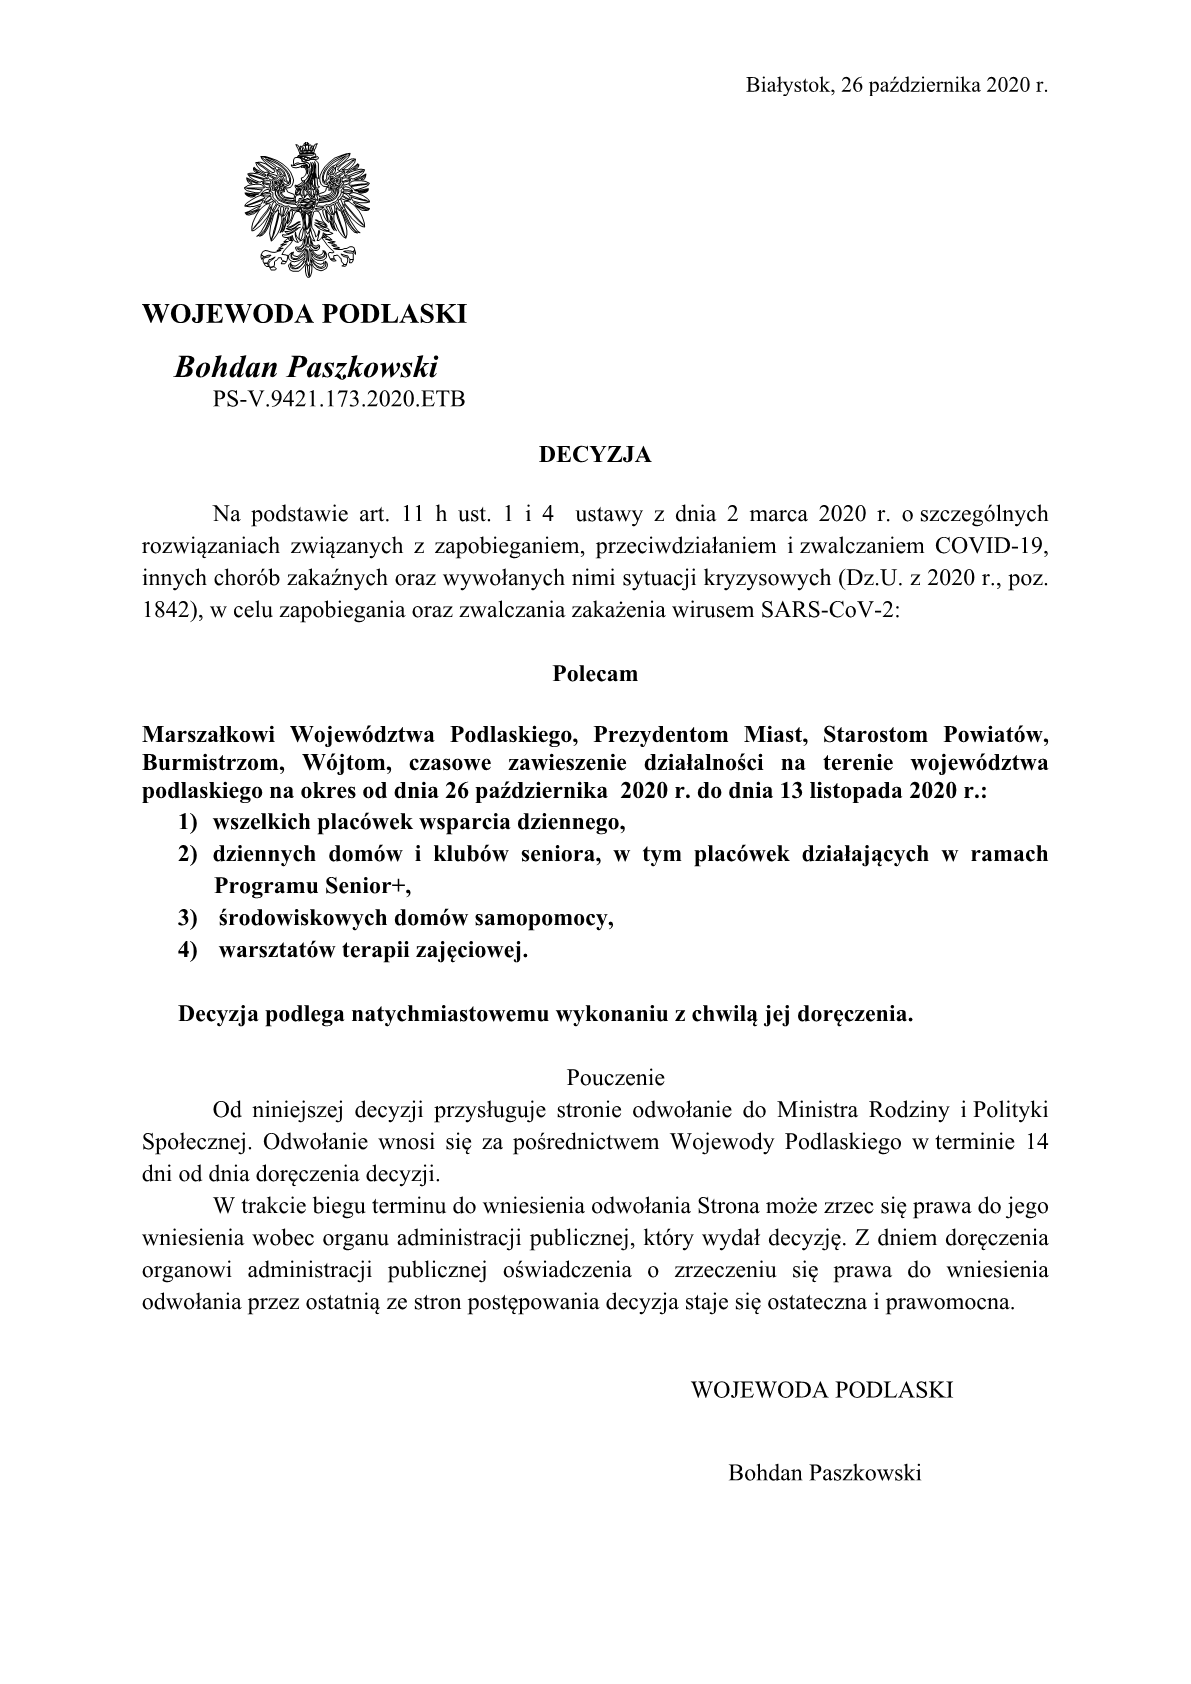 Decyzja Wojewody Podlaskiego zawieszajca placwki wsparcia dziennego od 26 padziernika do 13112020 11